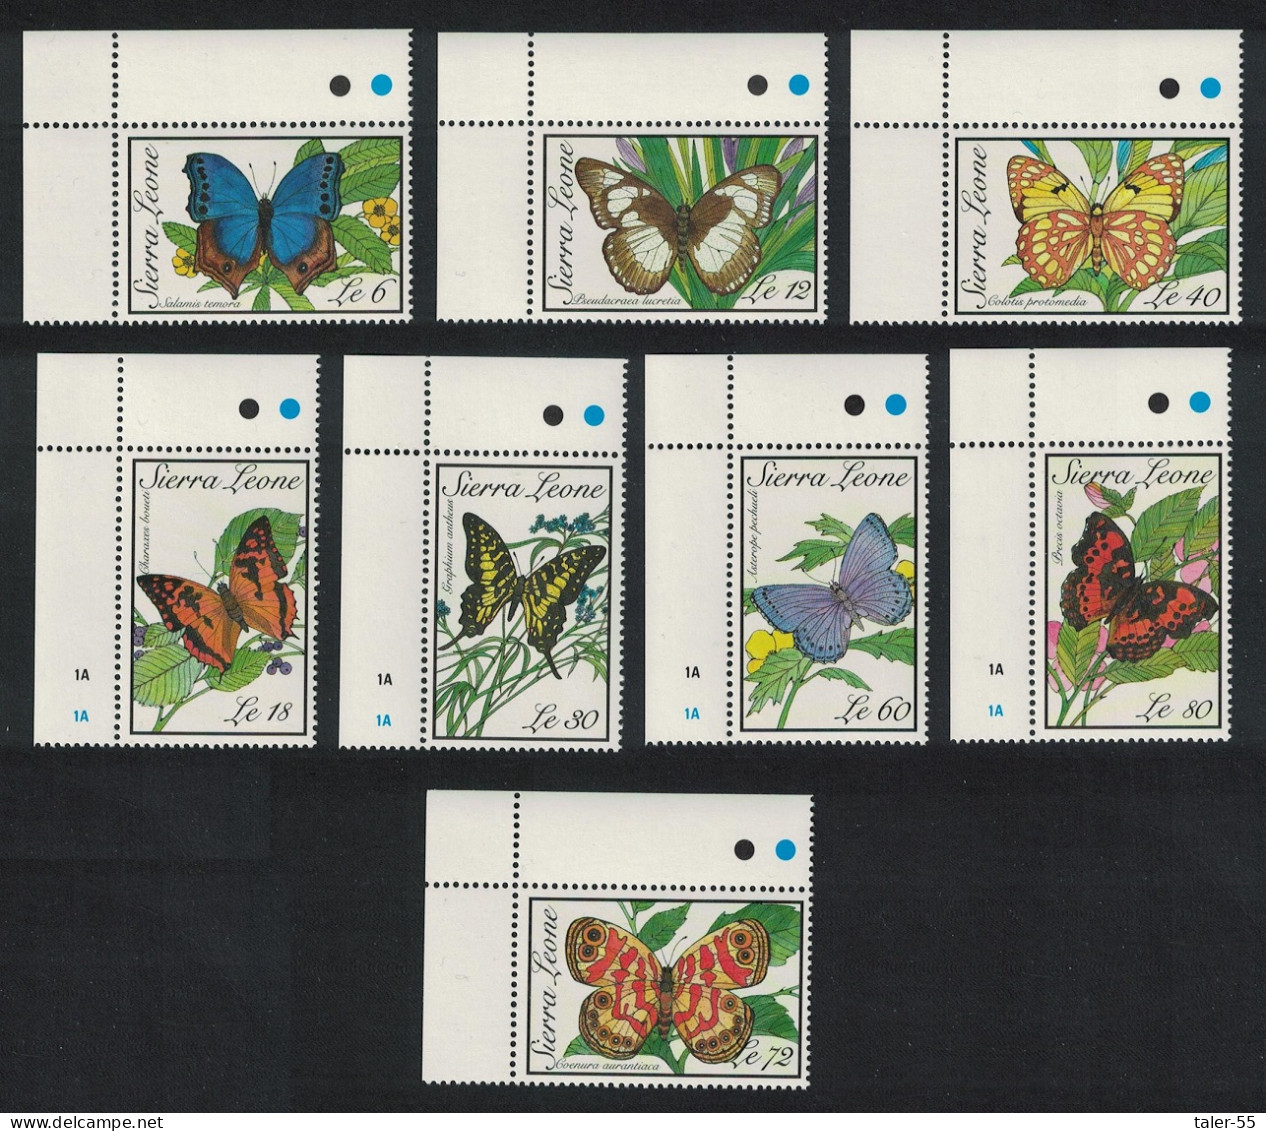 Sierra Leone Butterflies 8v Corners 1989 MNH SG#1312-1319 - Sierra Leone (1961-...)